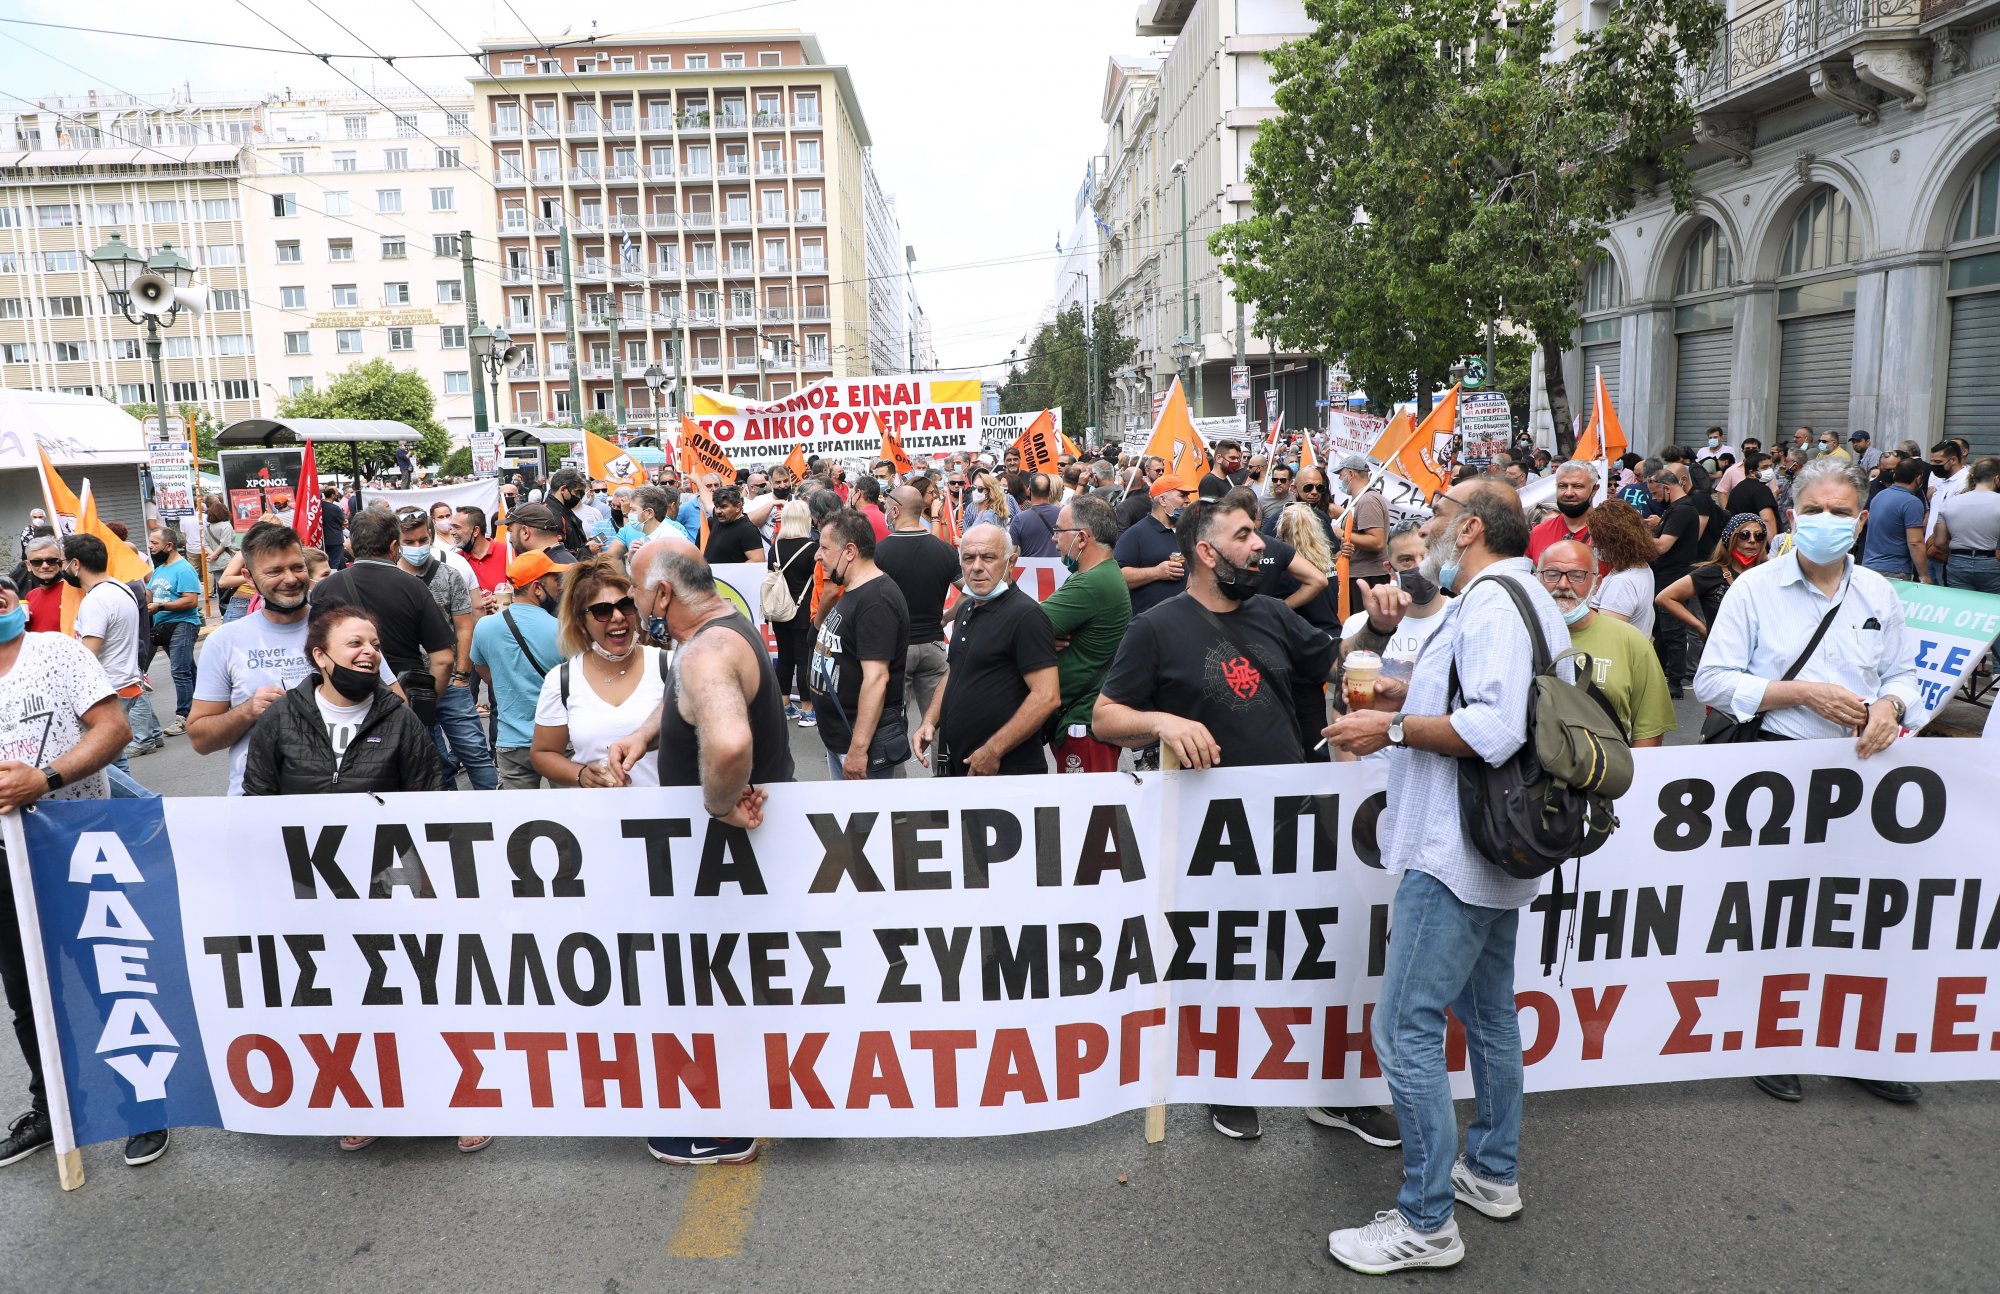 Κάλεσμα ΣΥΡΙΖΑ για συμμετοχή στην 24ωρη απεργία - «Για μια αξιοπρεπή ζωή και εργασία»